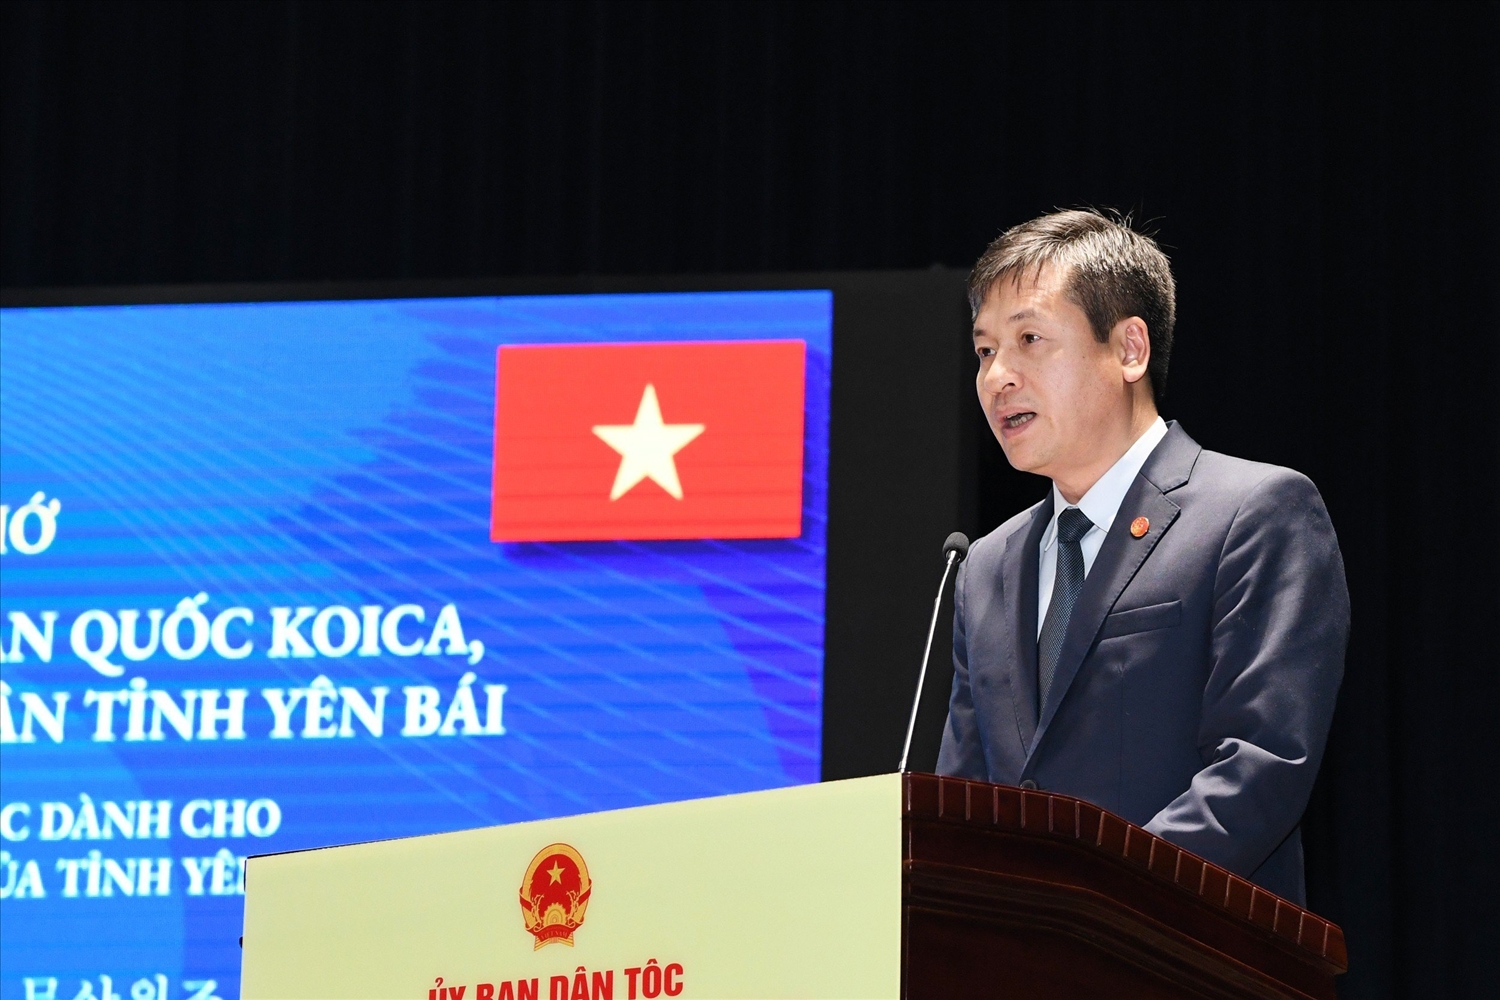 ông Ngô Hạnh Phúc, Phó Chủ tịch UBDT tỉnh Yên Bái phát biểu tại buổi lễ